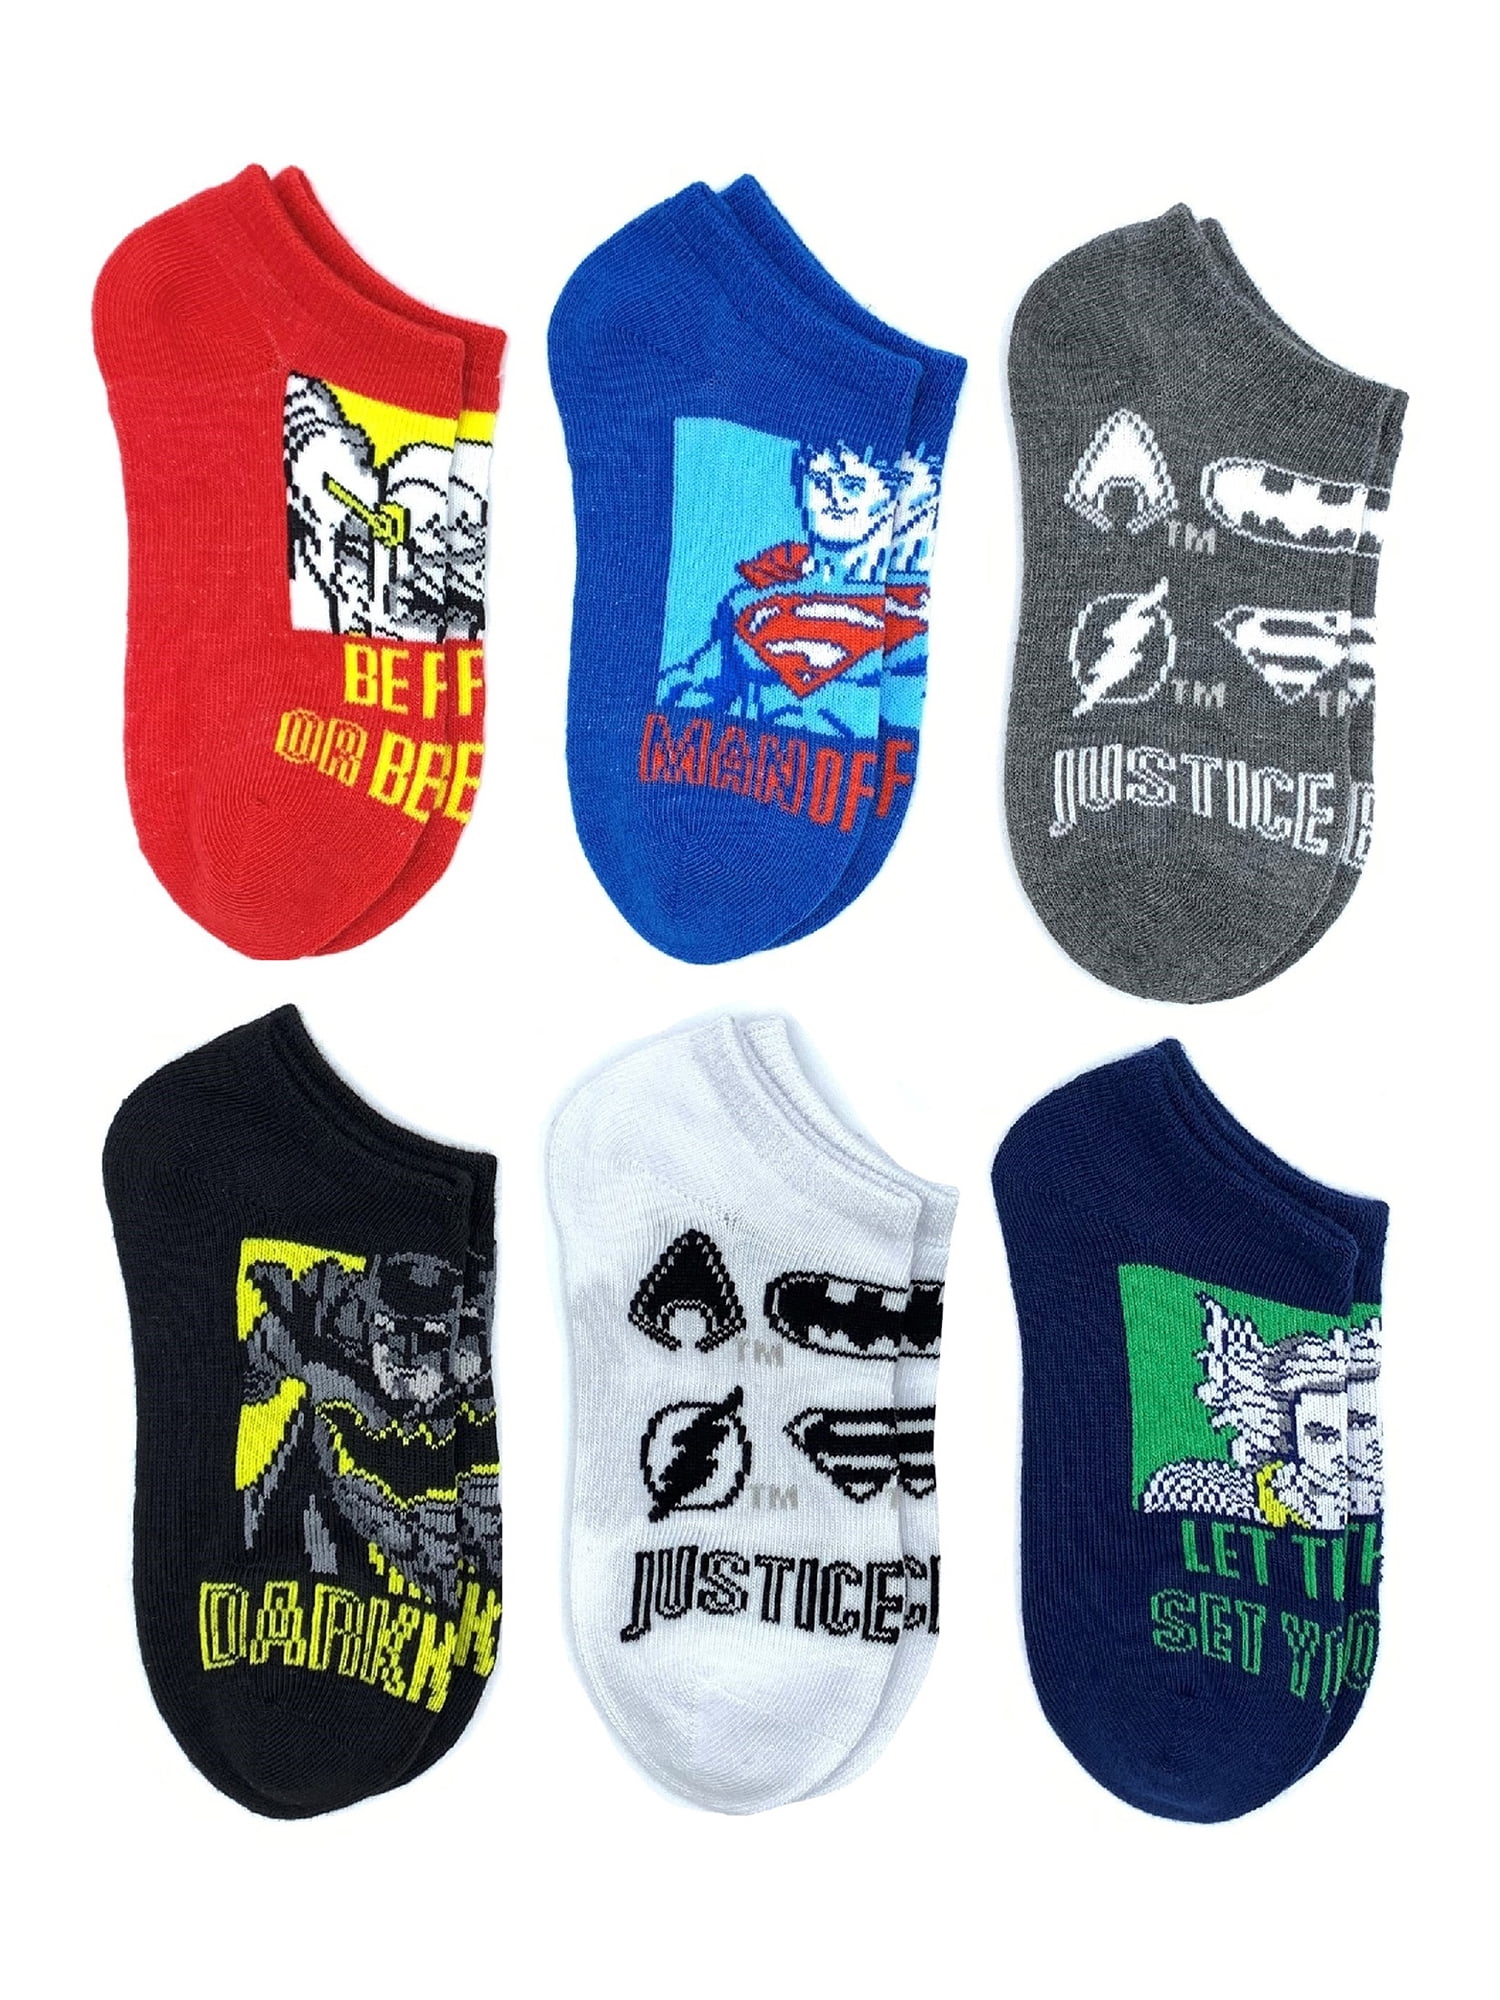 Justice League Boys No Show Graphic Socks, 6-Pack, Sizes S-L - Walmart.com